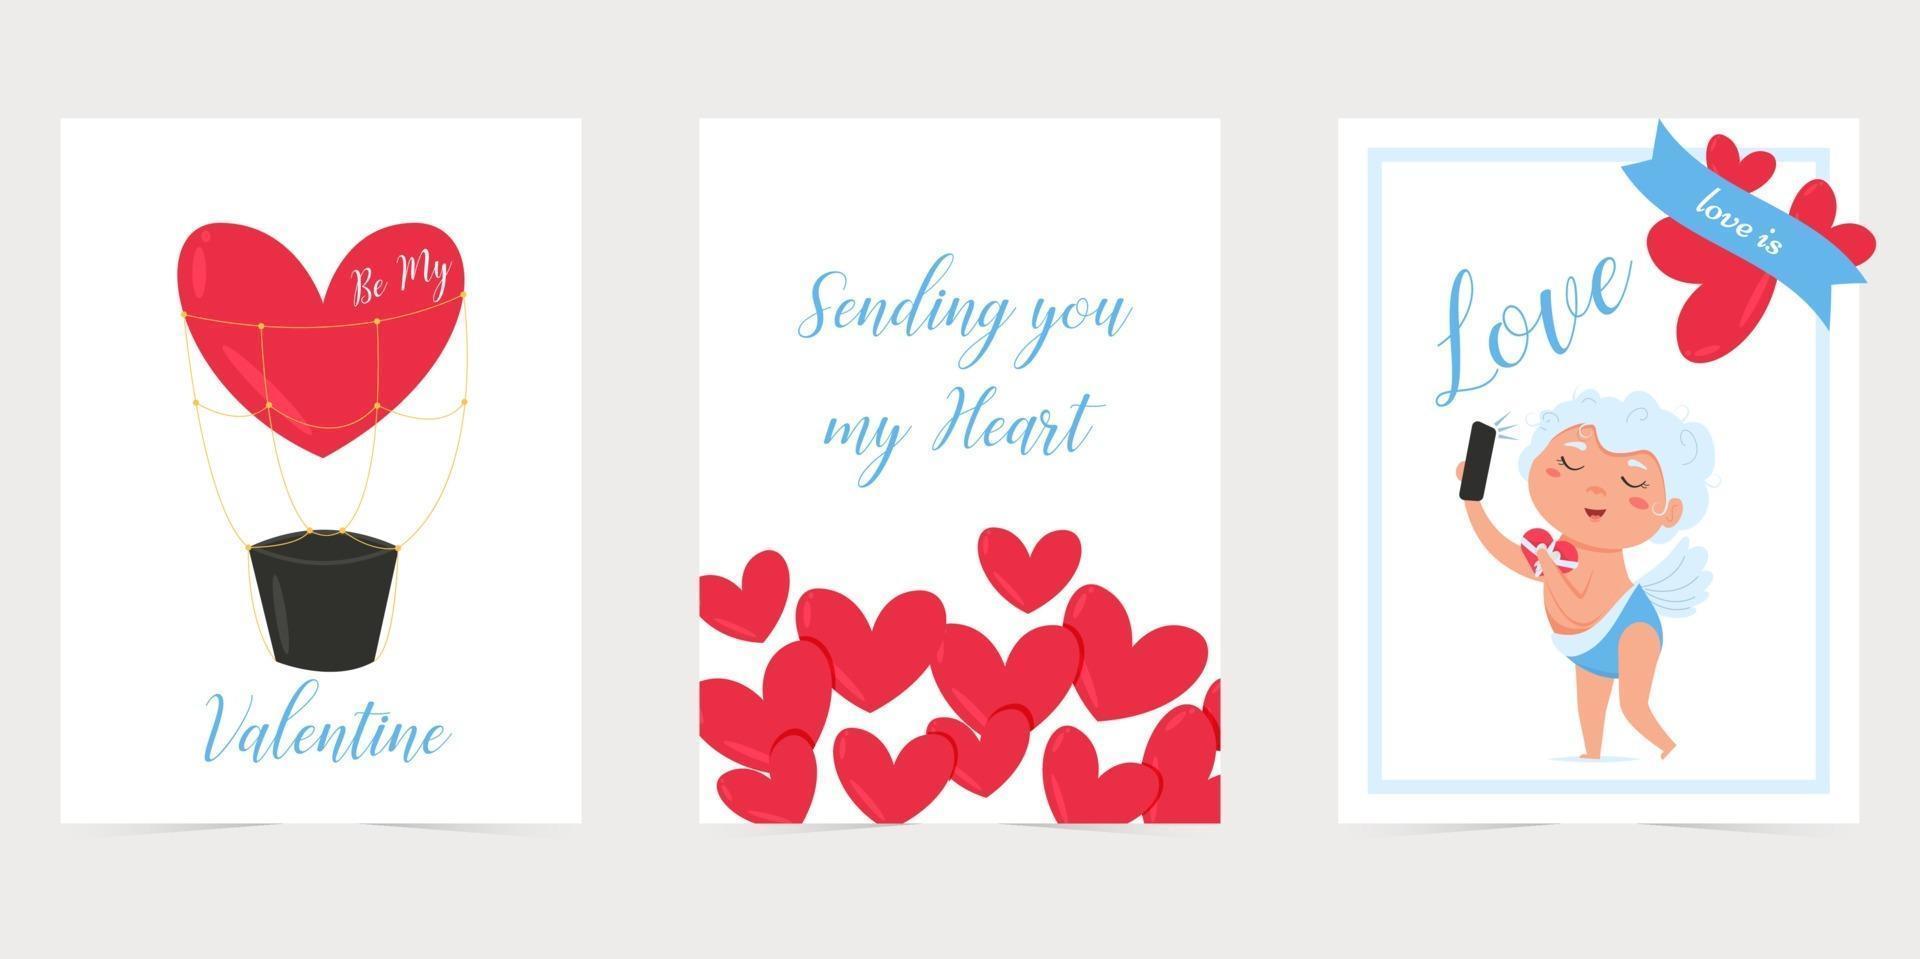 tarjeta de San Valentín con corazón rojo. te amo banner. Cartel o tarjeta de felicitación del día de San Valentín de vacaciones románticas. vector